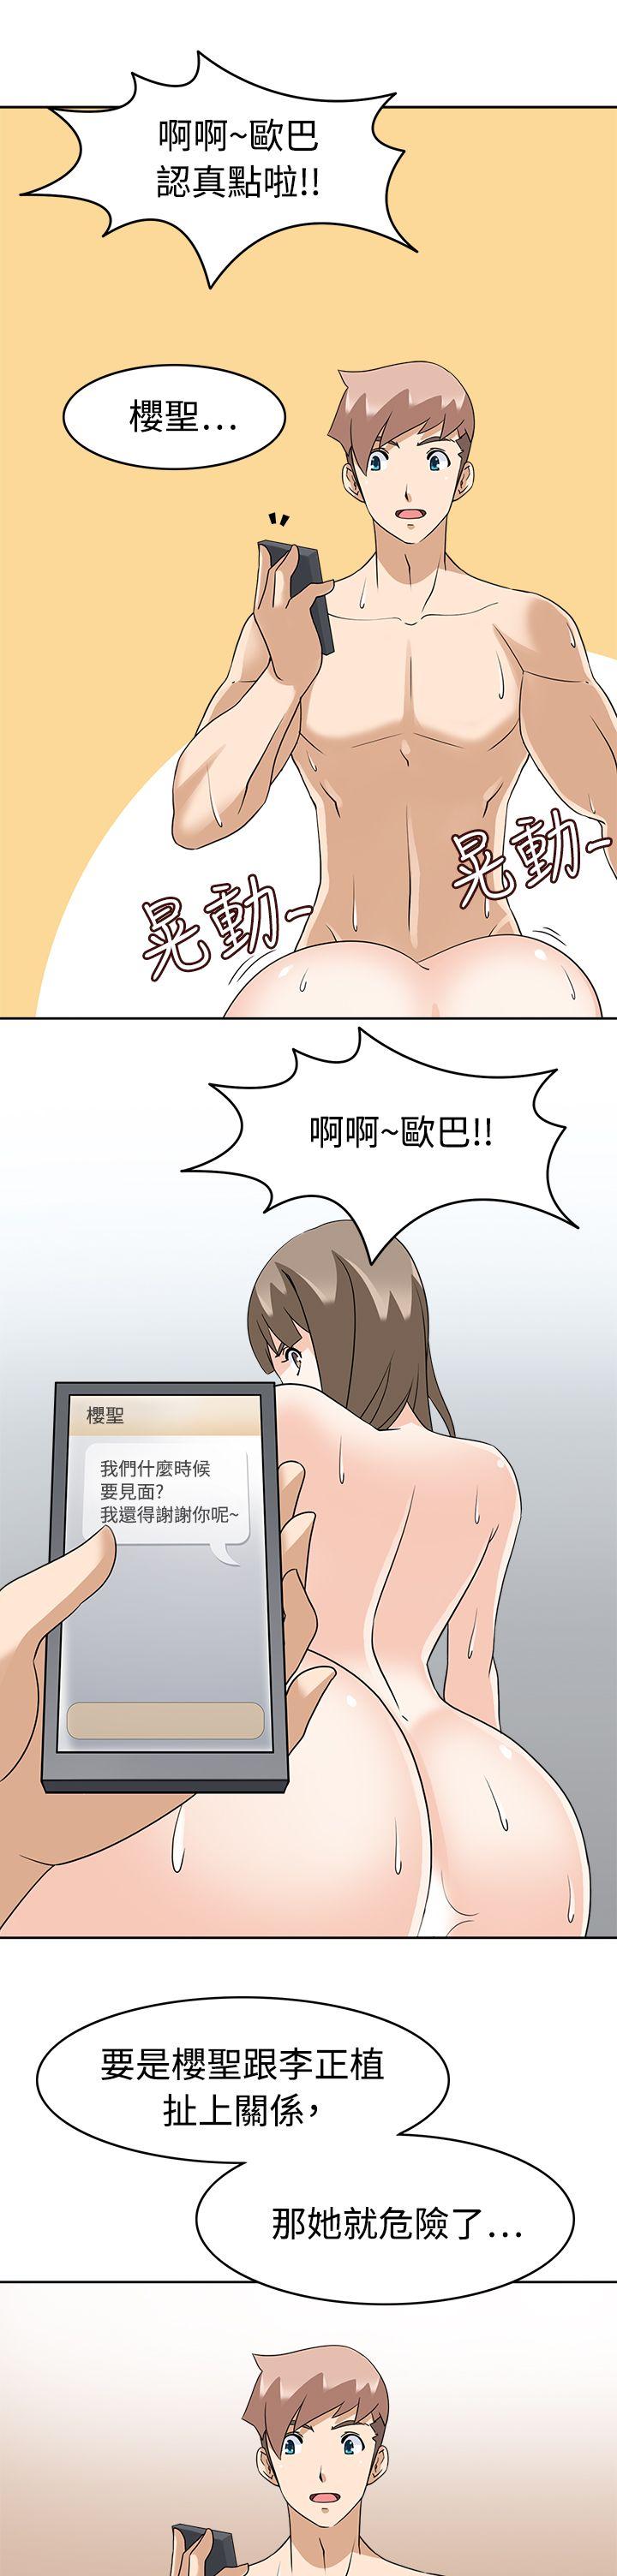 韩国污漫画 軍人的誘惑 第17话 25